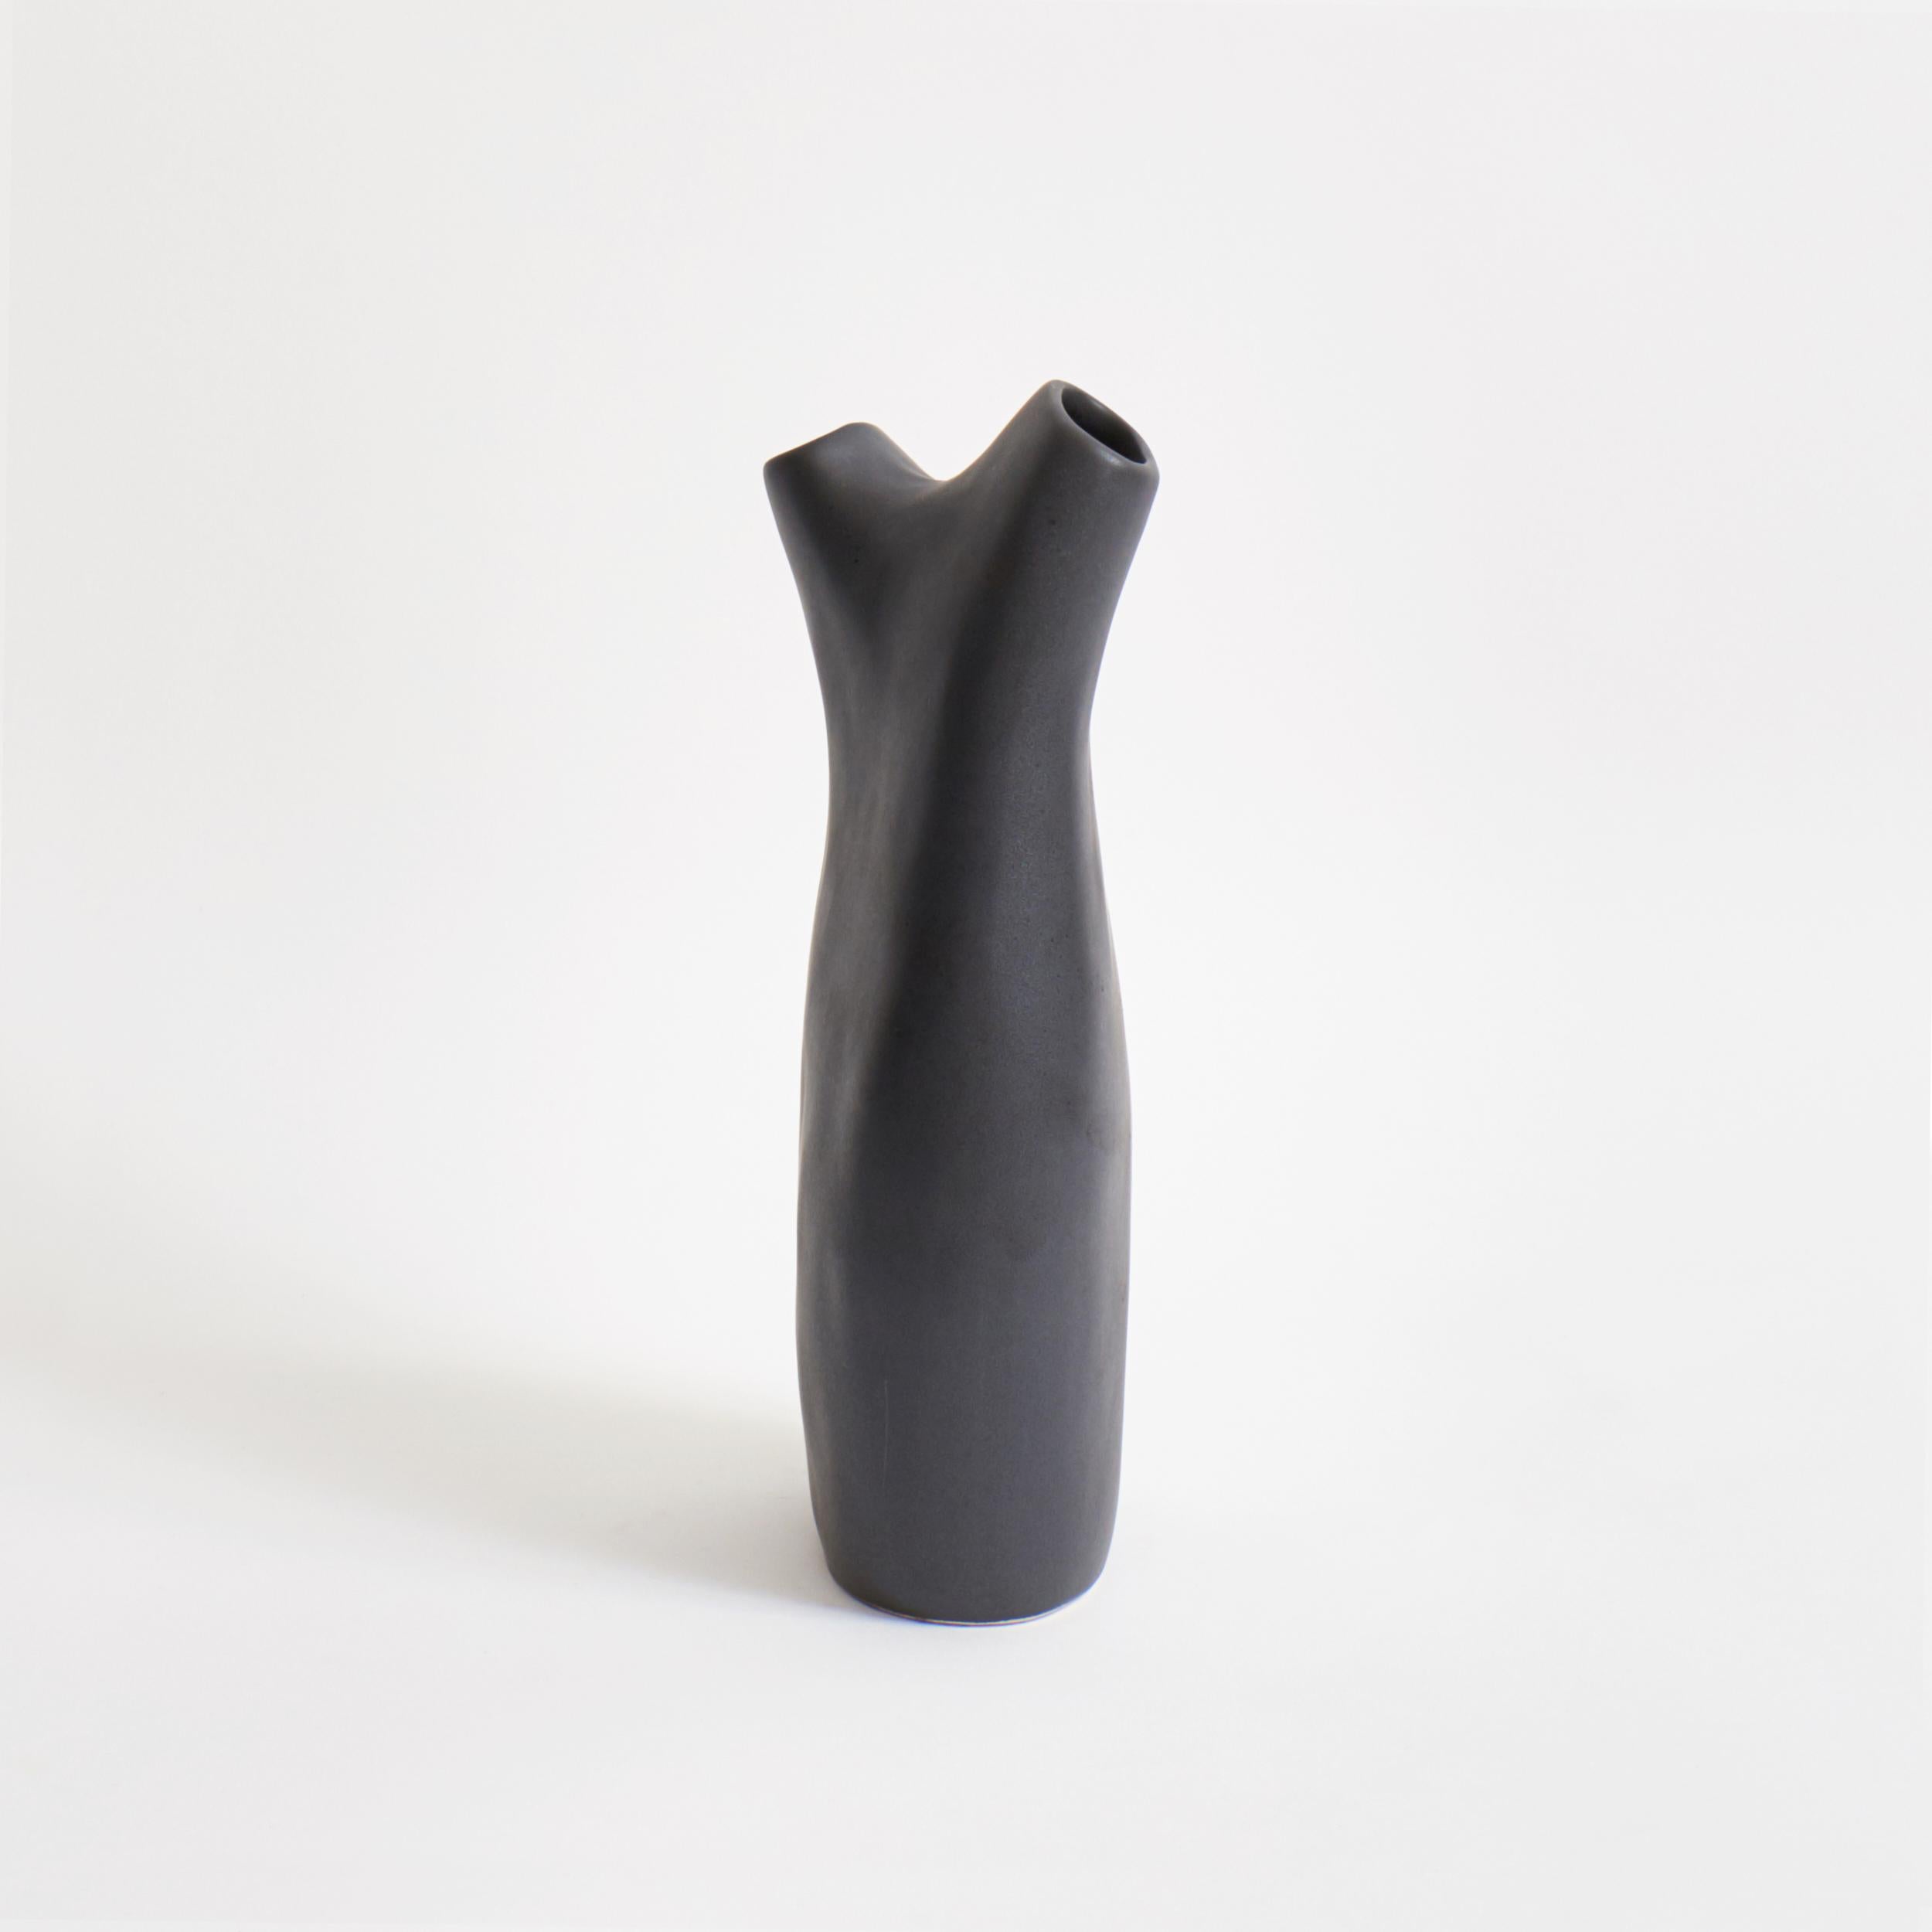 Zwillinge Vase in Graphit
Entworfen von Projekt 213A im Jahr 2020
Handgefertigtes Steingut

Ein schönes Blumenarrangement kann die innere Qualität von Blumen und Pflanzen zum Ausdruck bringen und Emotionen ausdrücken. Das ist Ikebana, die